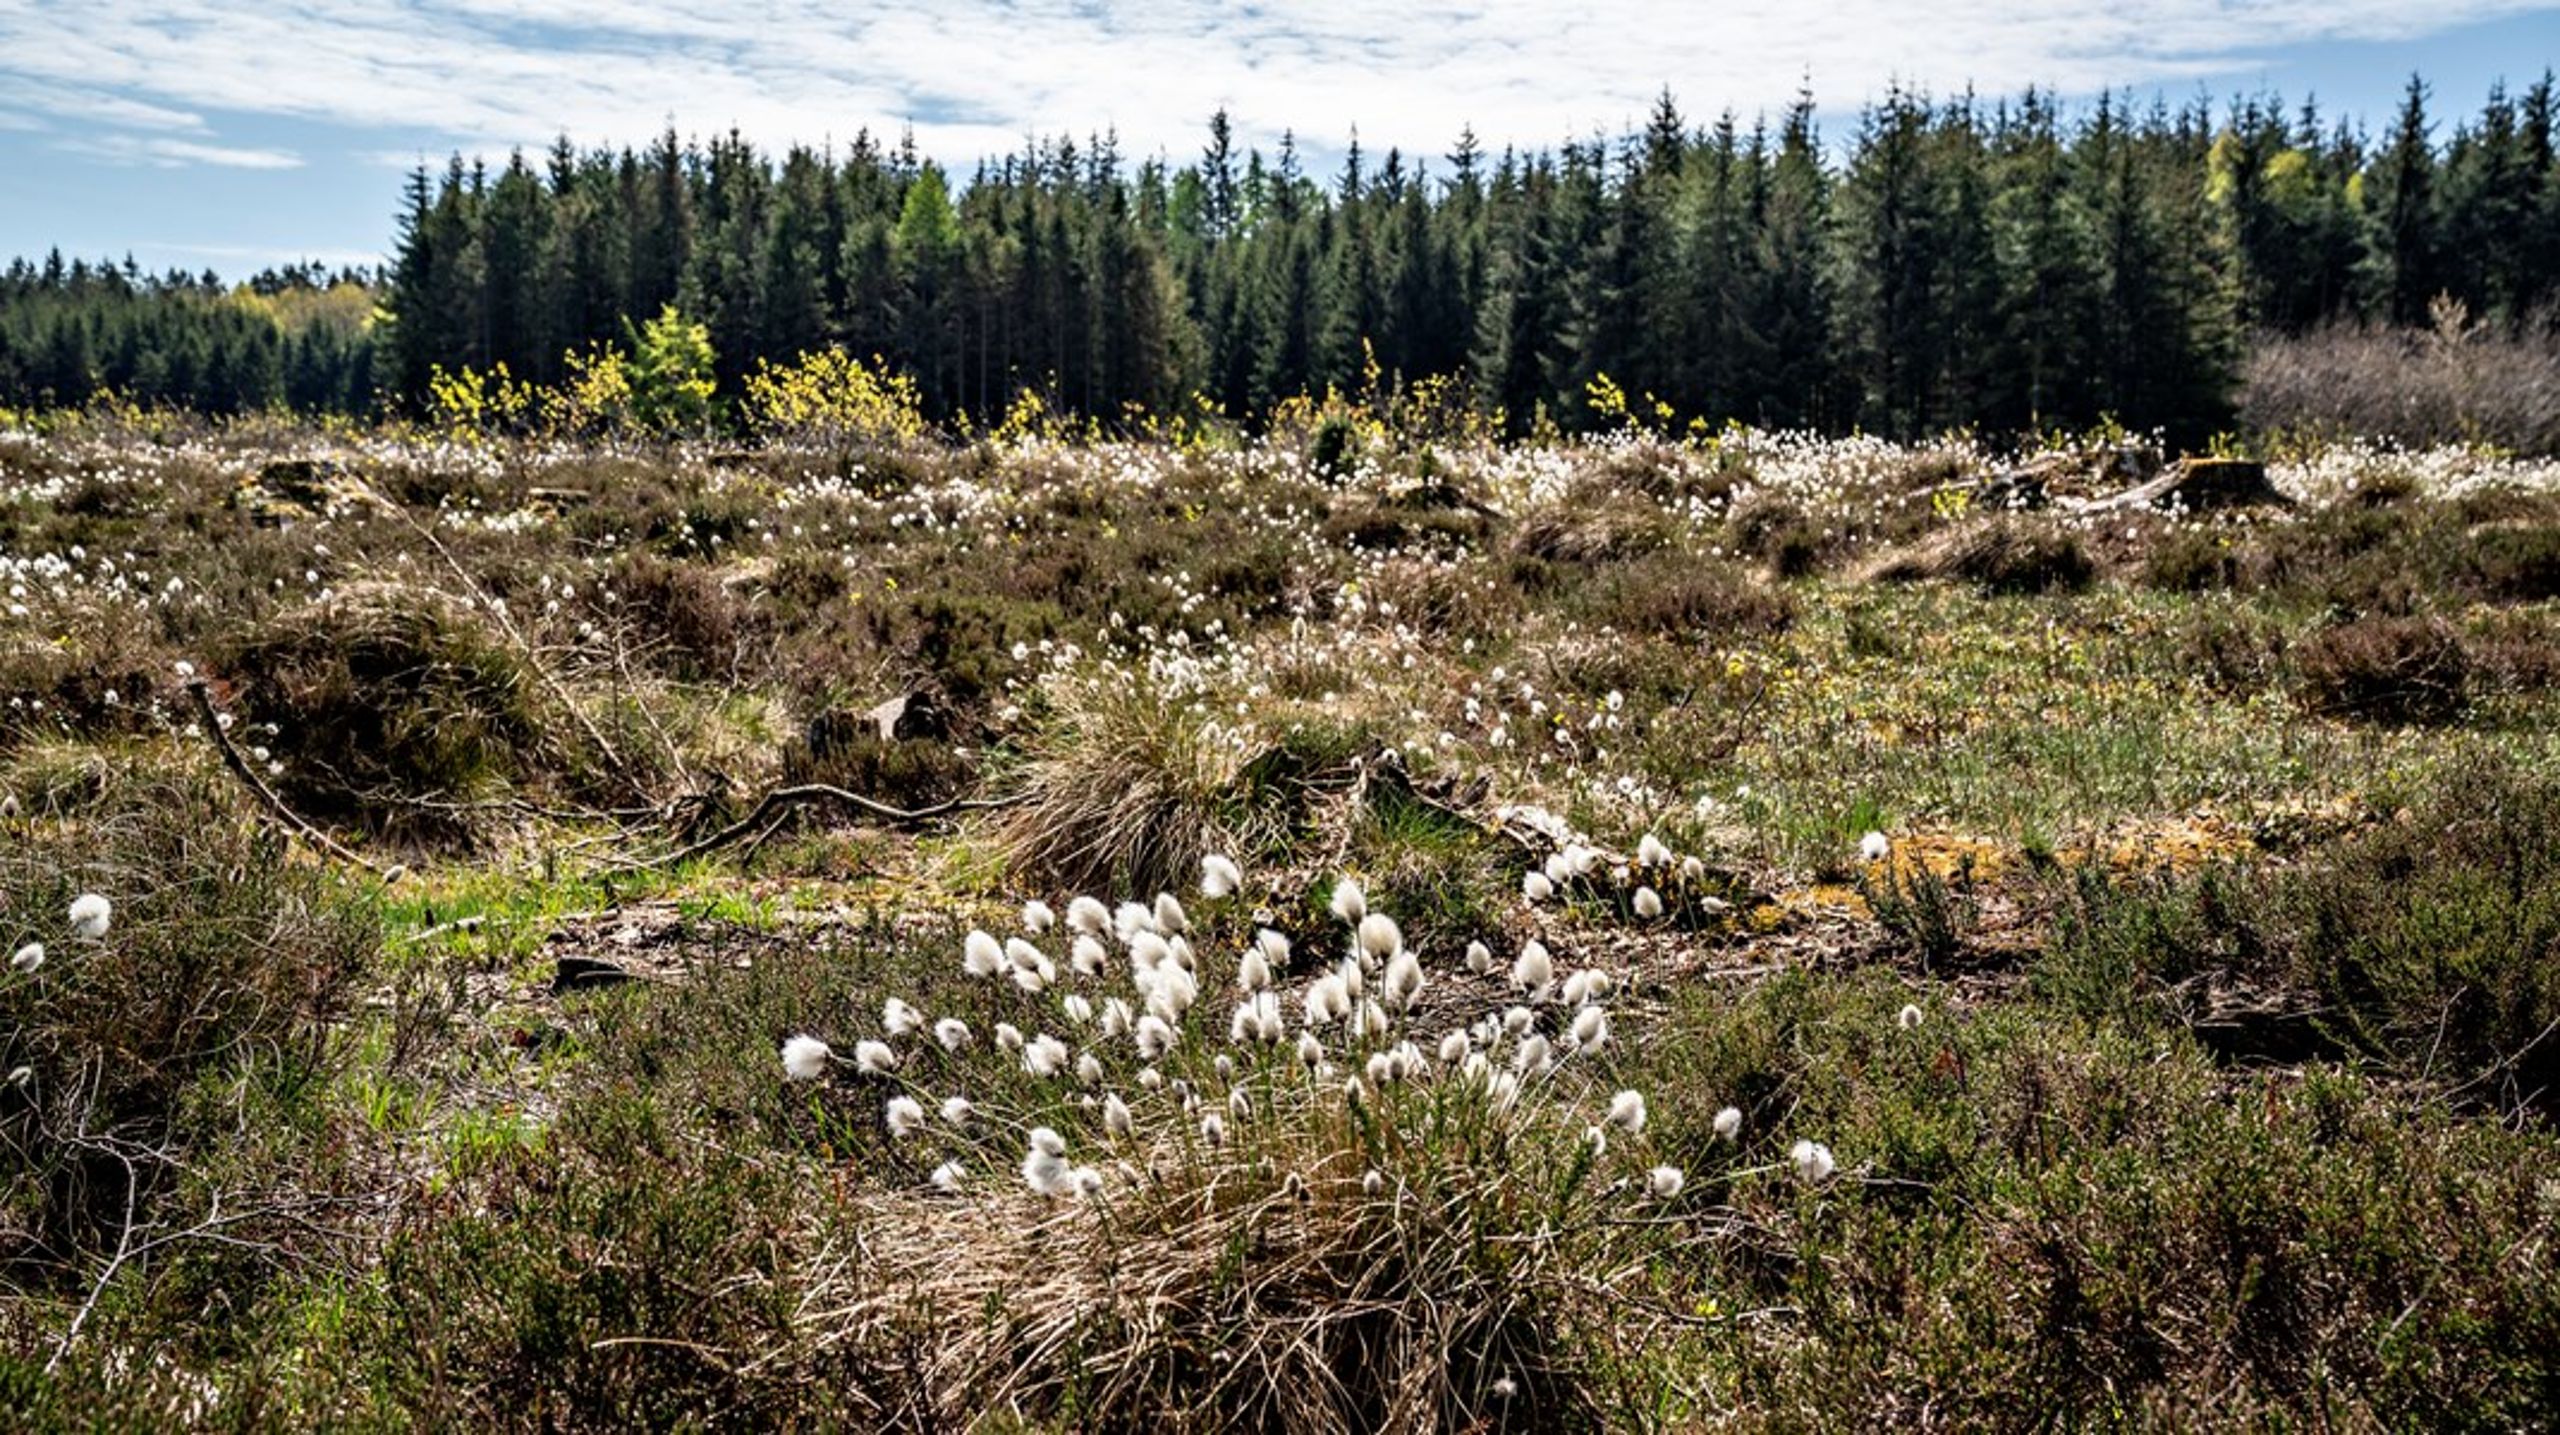 Mere plads til natur i Danmark løser ikke biodiversitetskrisen, skriver Bente Hessellund Andersen og Mads Kjærgaard Lange.